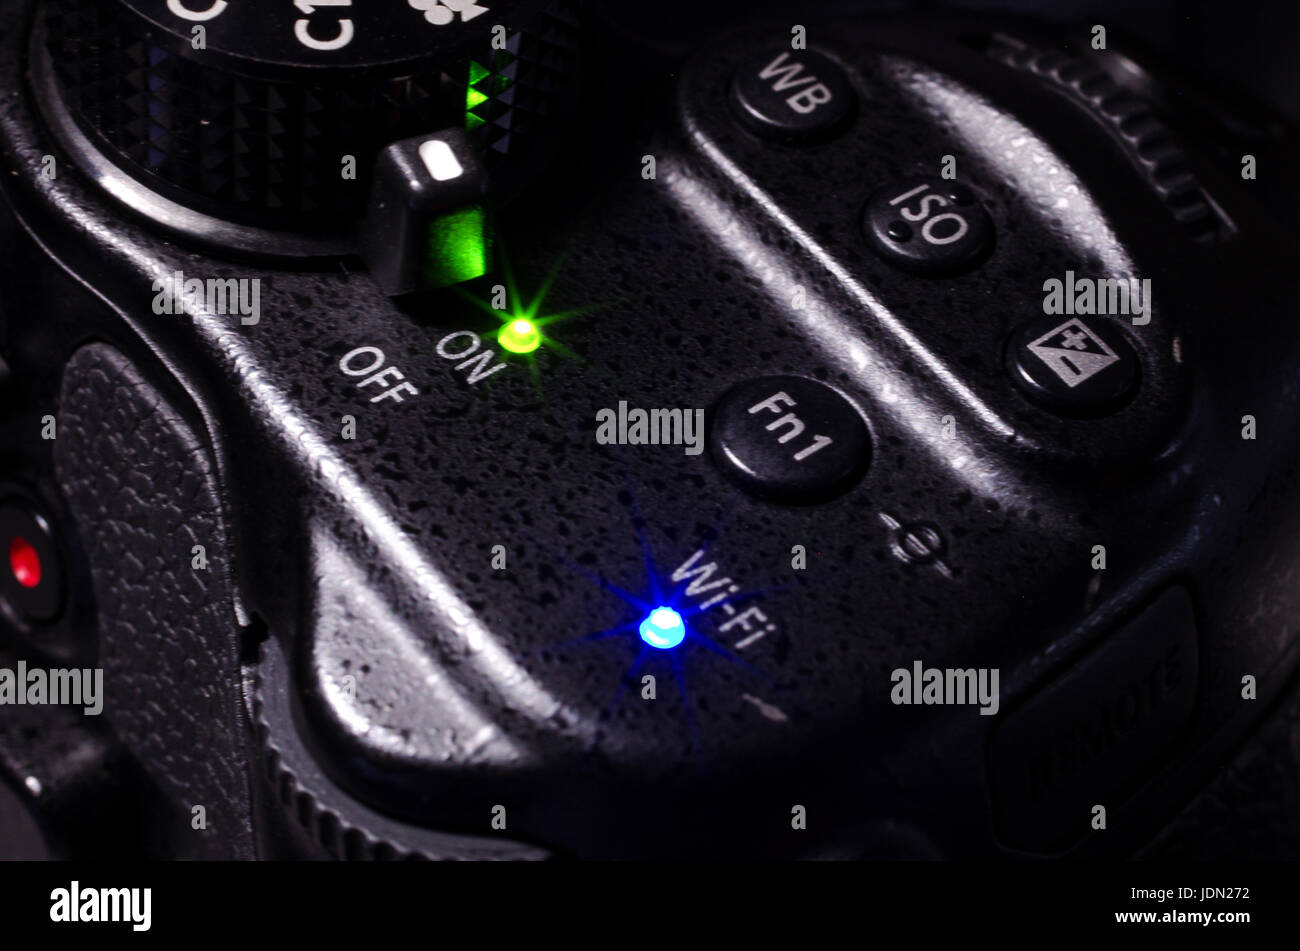 Appareil photo reflex numérique avec connexion Wi-Fi gratuite et d'alimentation starburst lights Banque D'Images